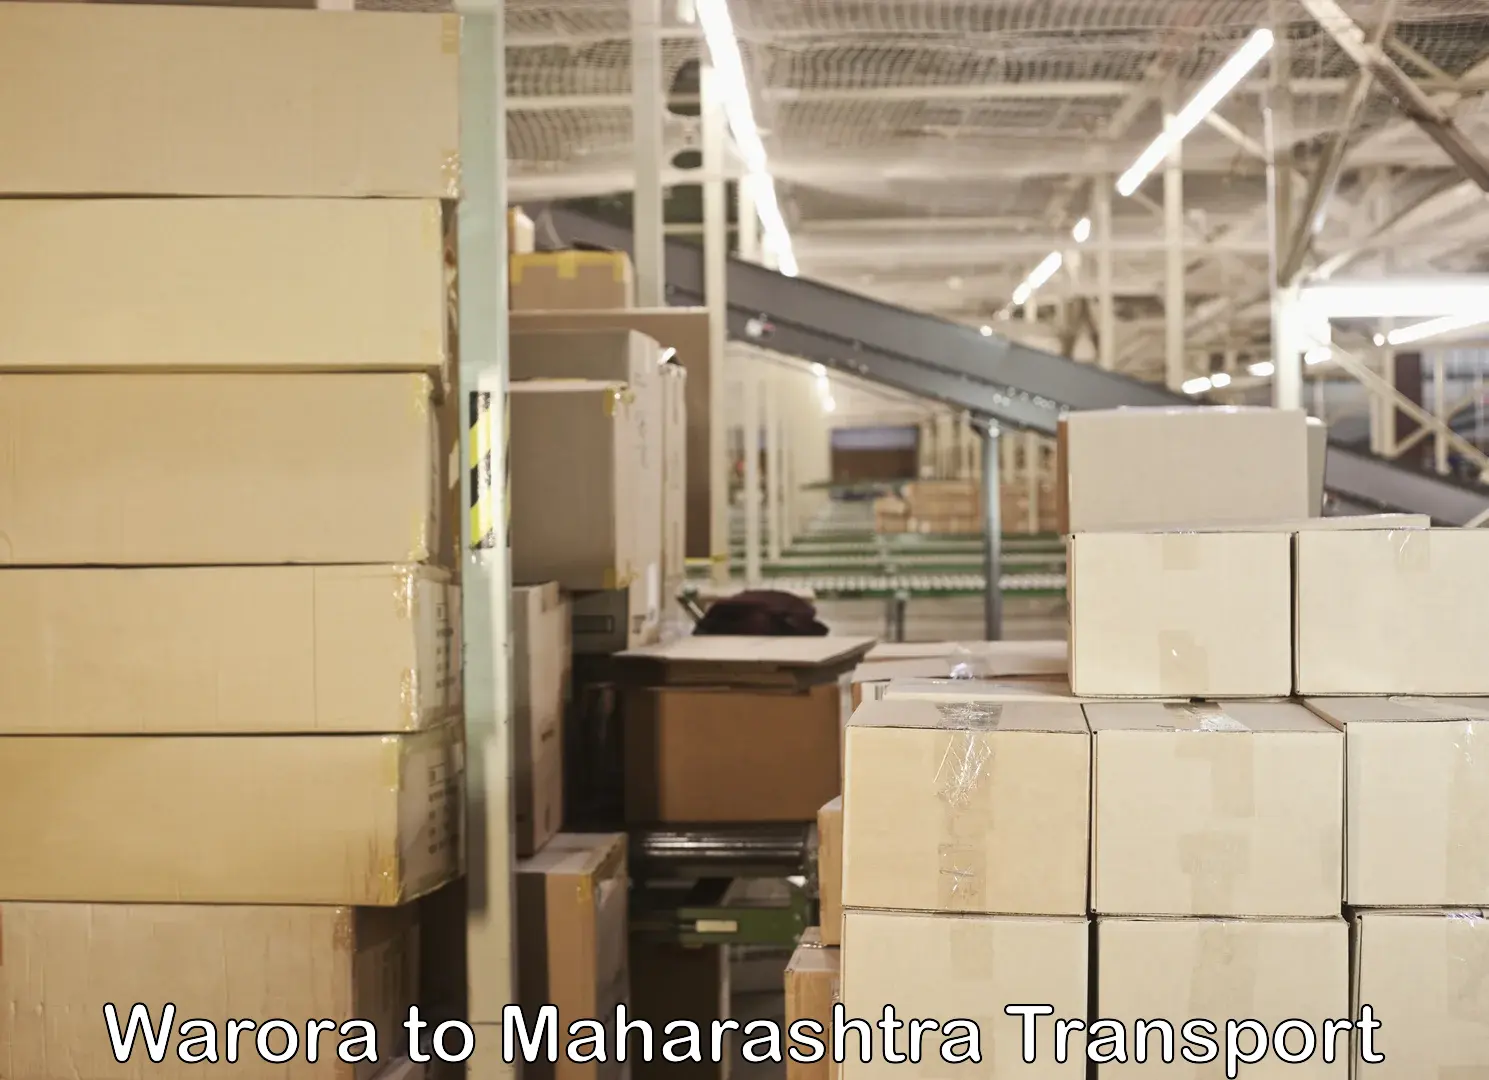 Commercial transport service Warora to Maharashtra